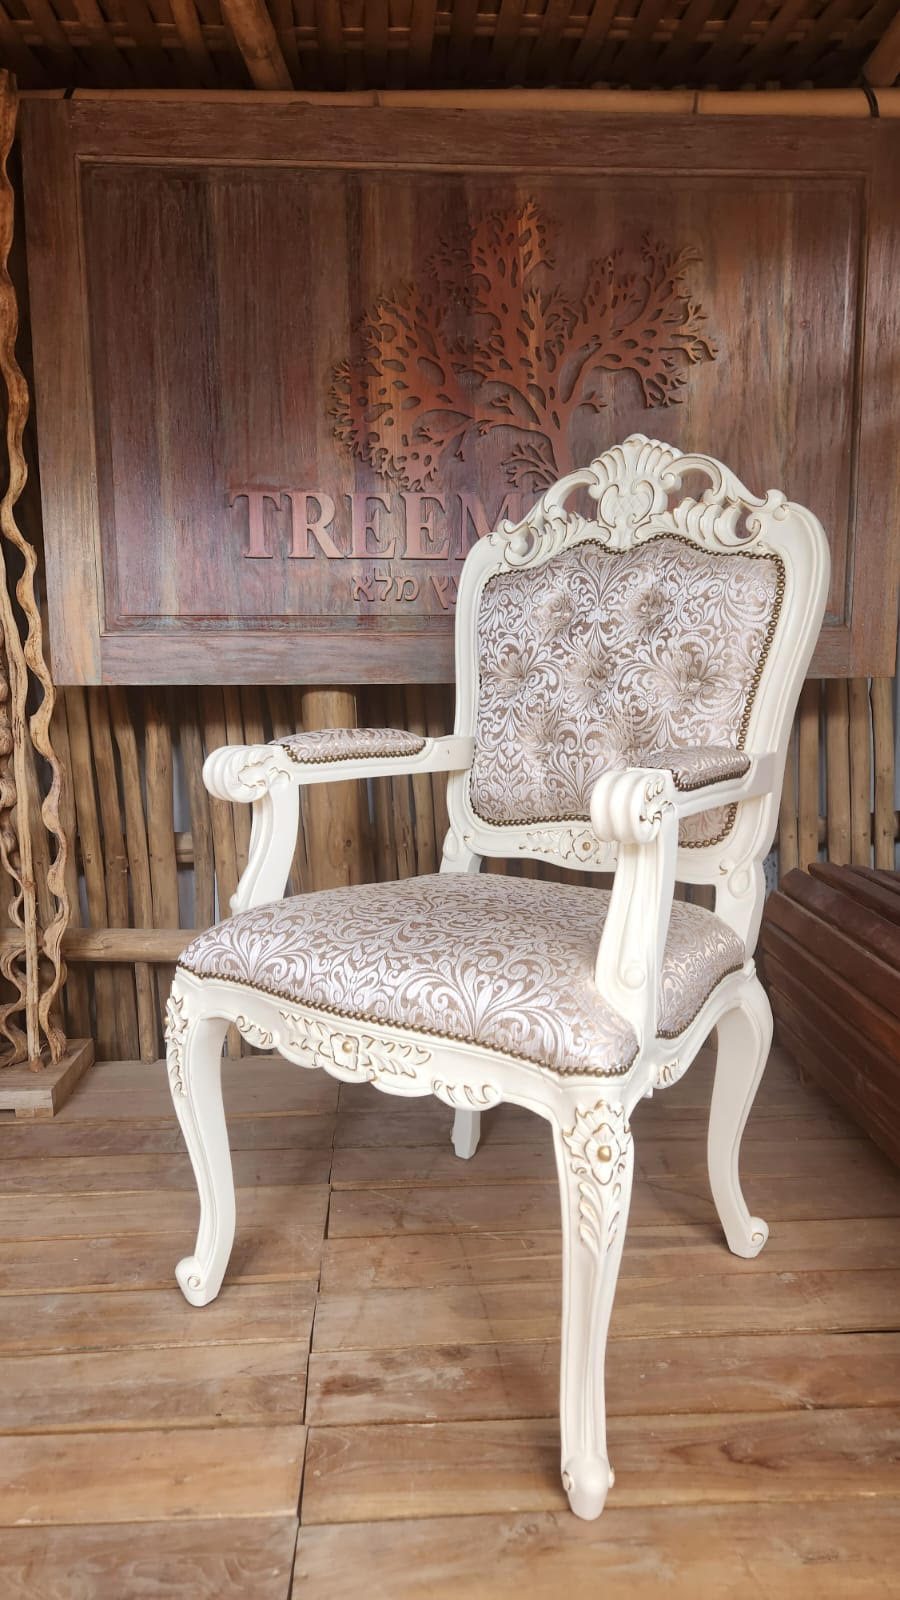 כורסא עץ מלא גילוף עבודת יד גוון שמנת עם נגיעות זהב במחיר מבצע: 3,400 ש"ח